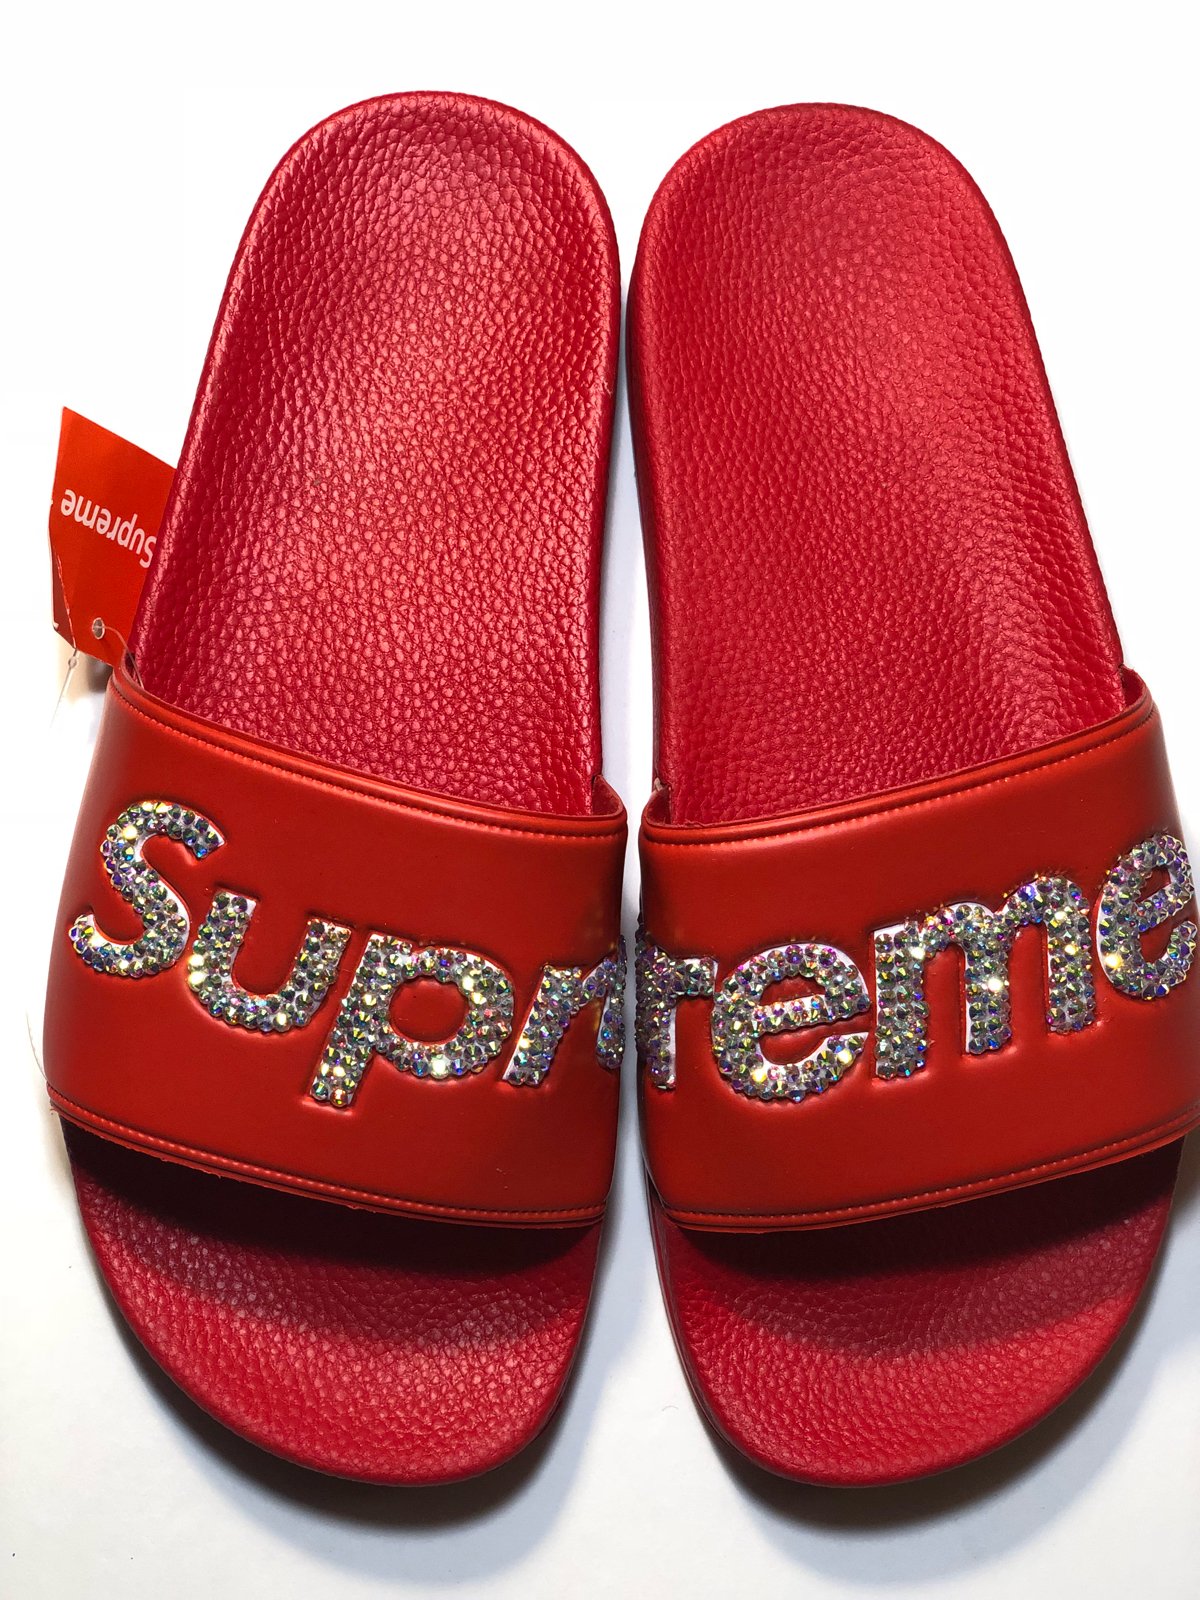 Supreme Black Flip Flops Sliders for Men